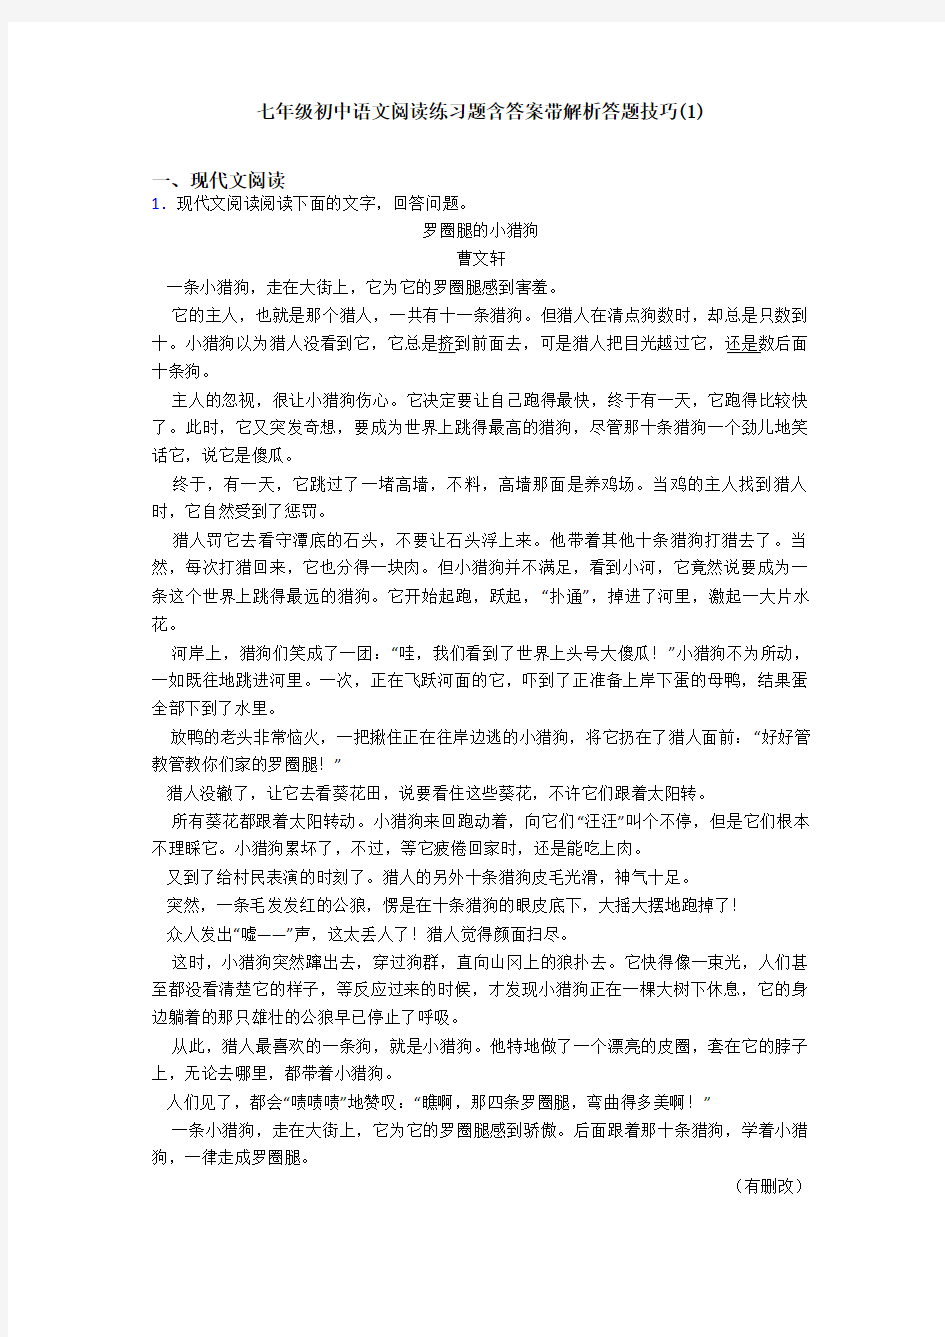 七年级初中语文阅读练习题含答案带解析答题技巧(1)